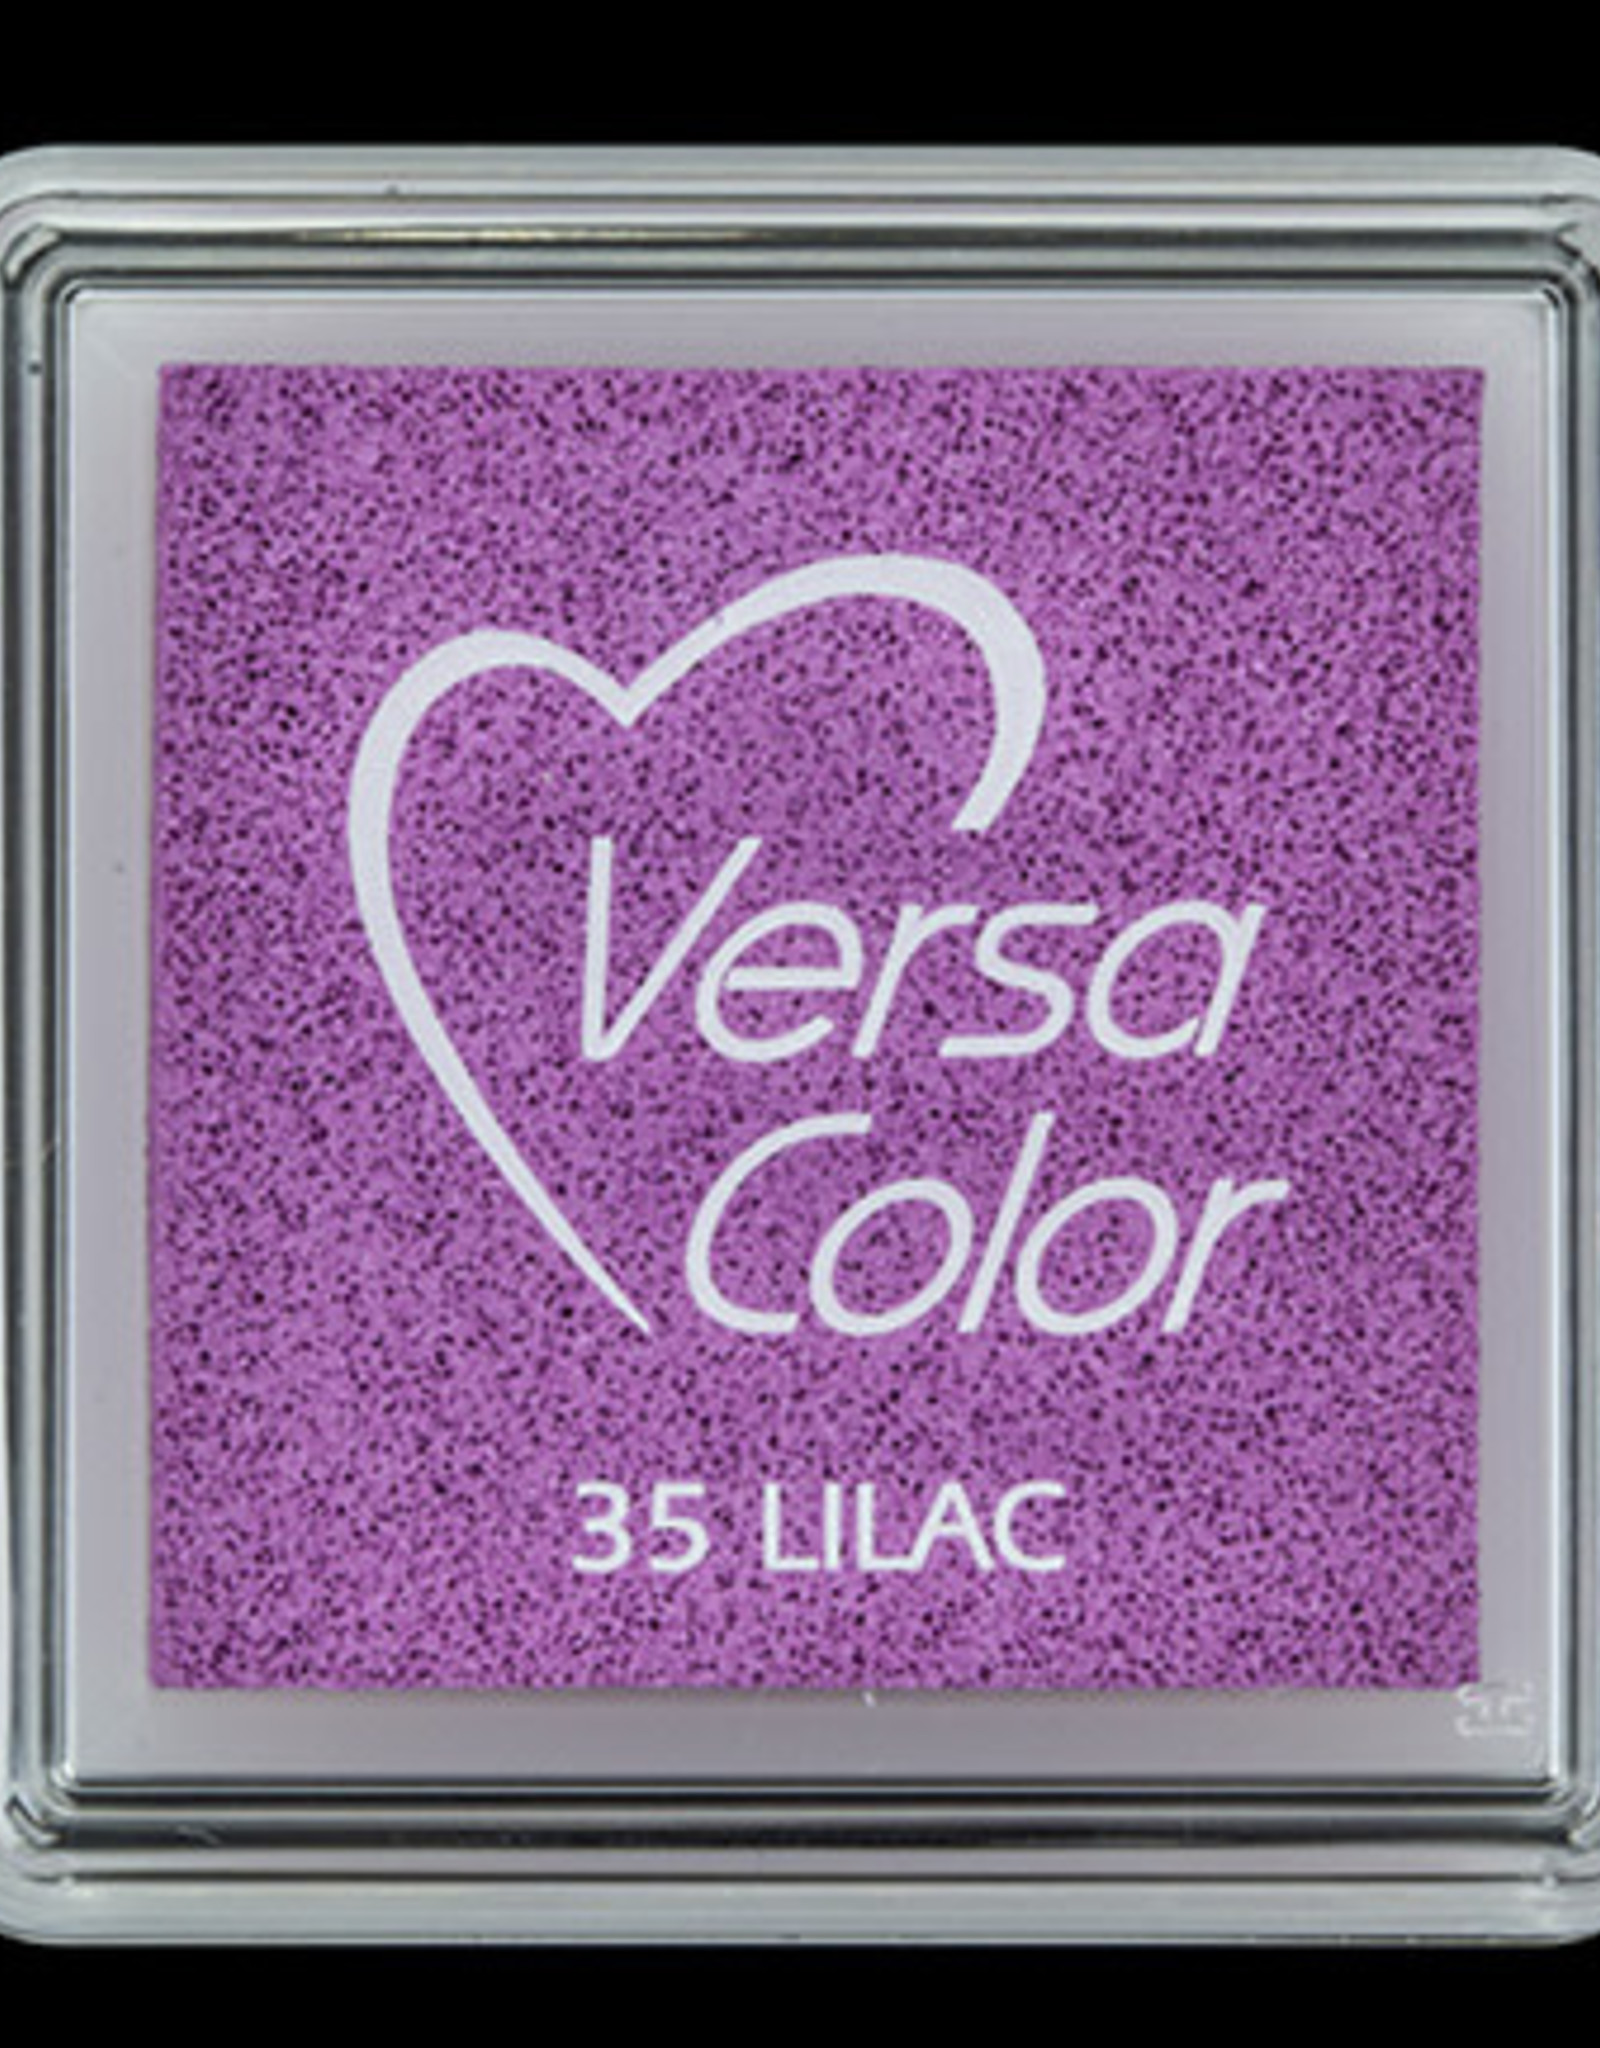 versacolor Versacolor Lilac 35